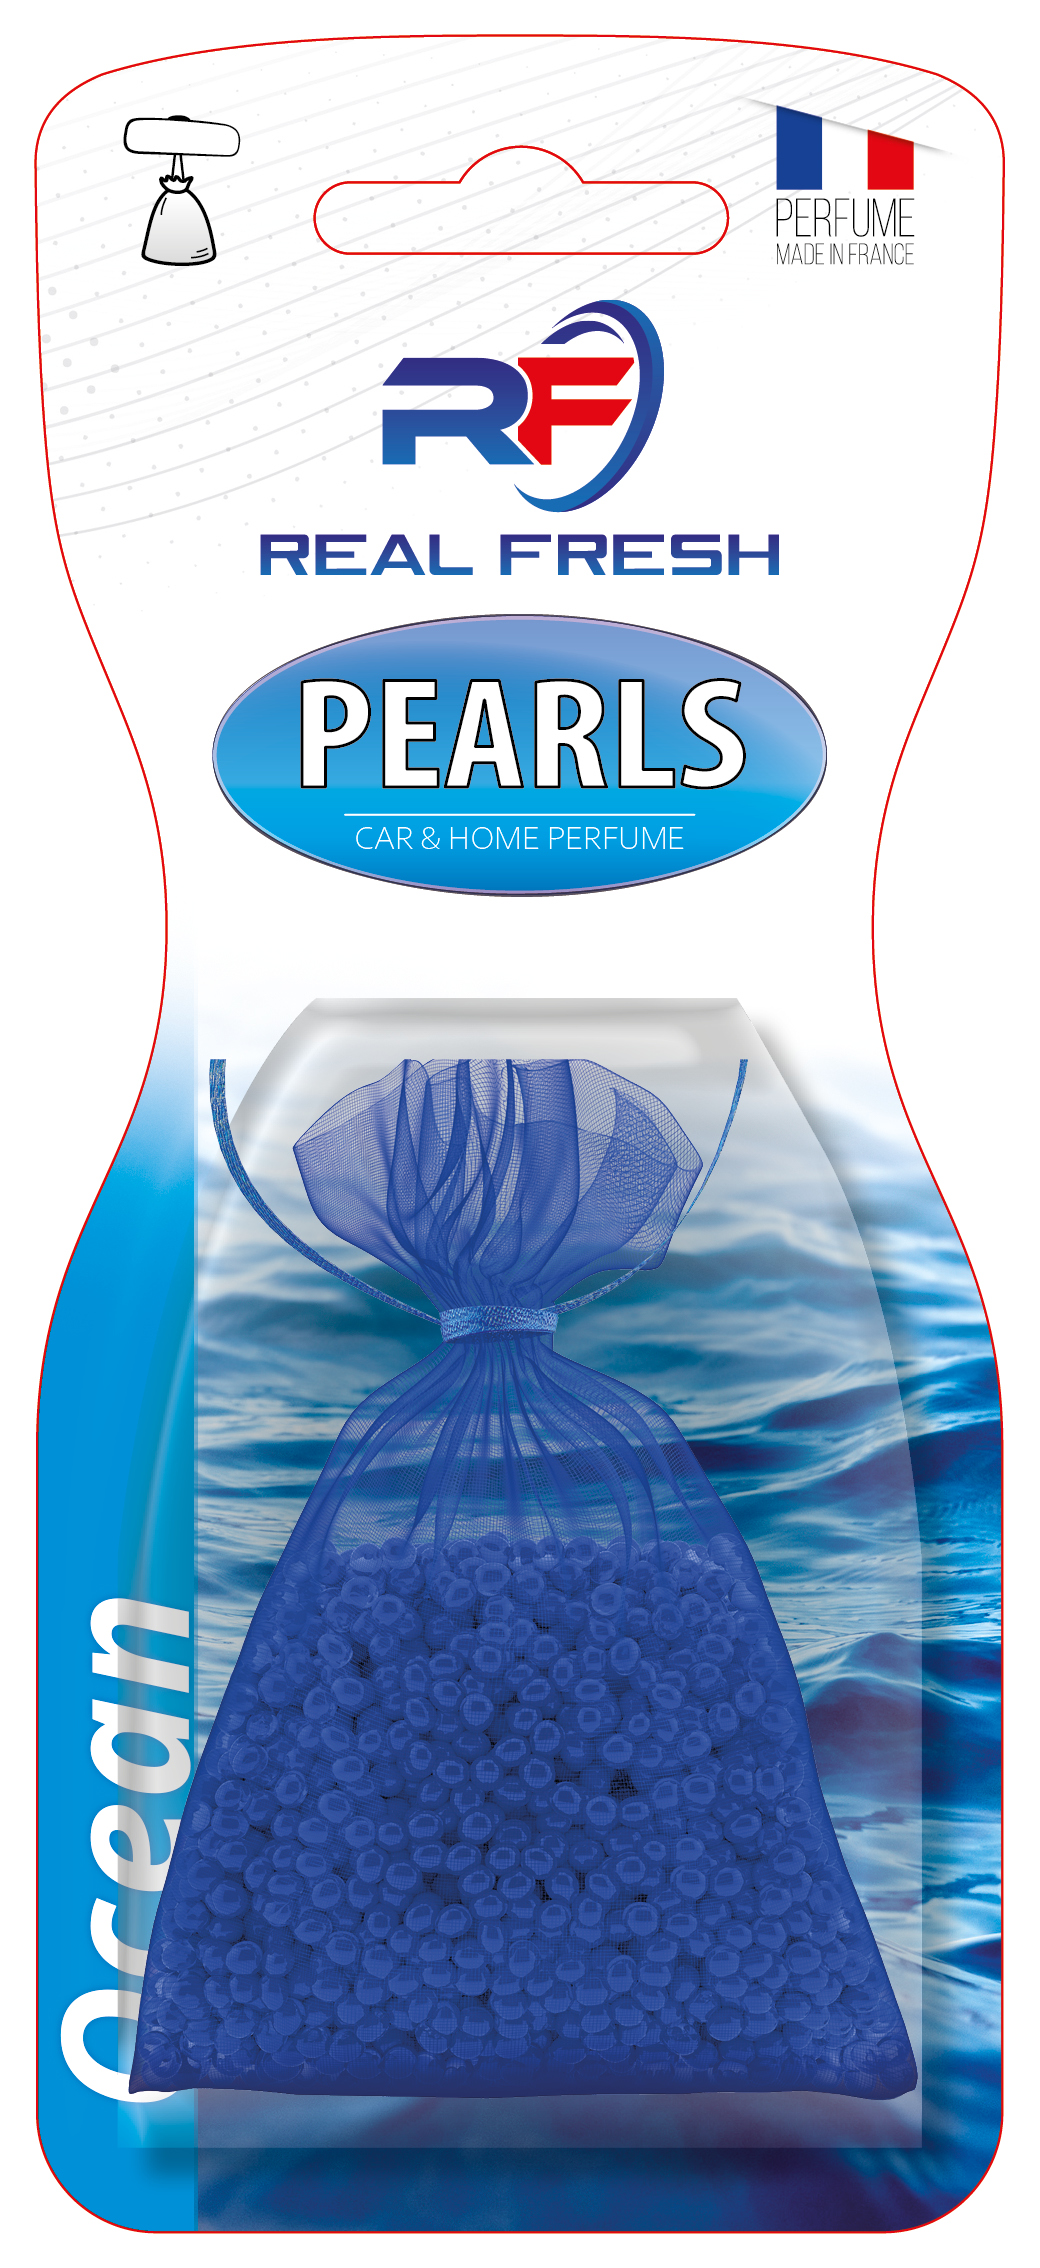 Pearls Ocean Image